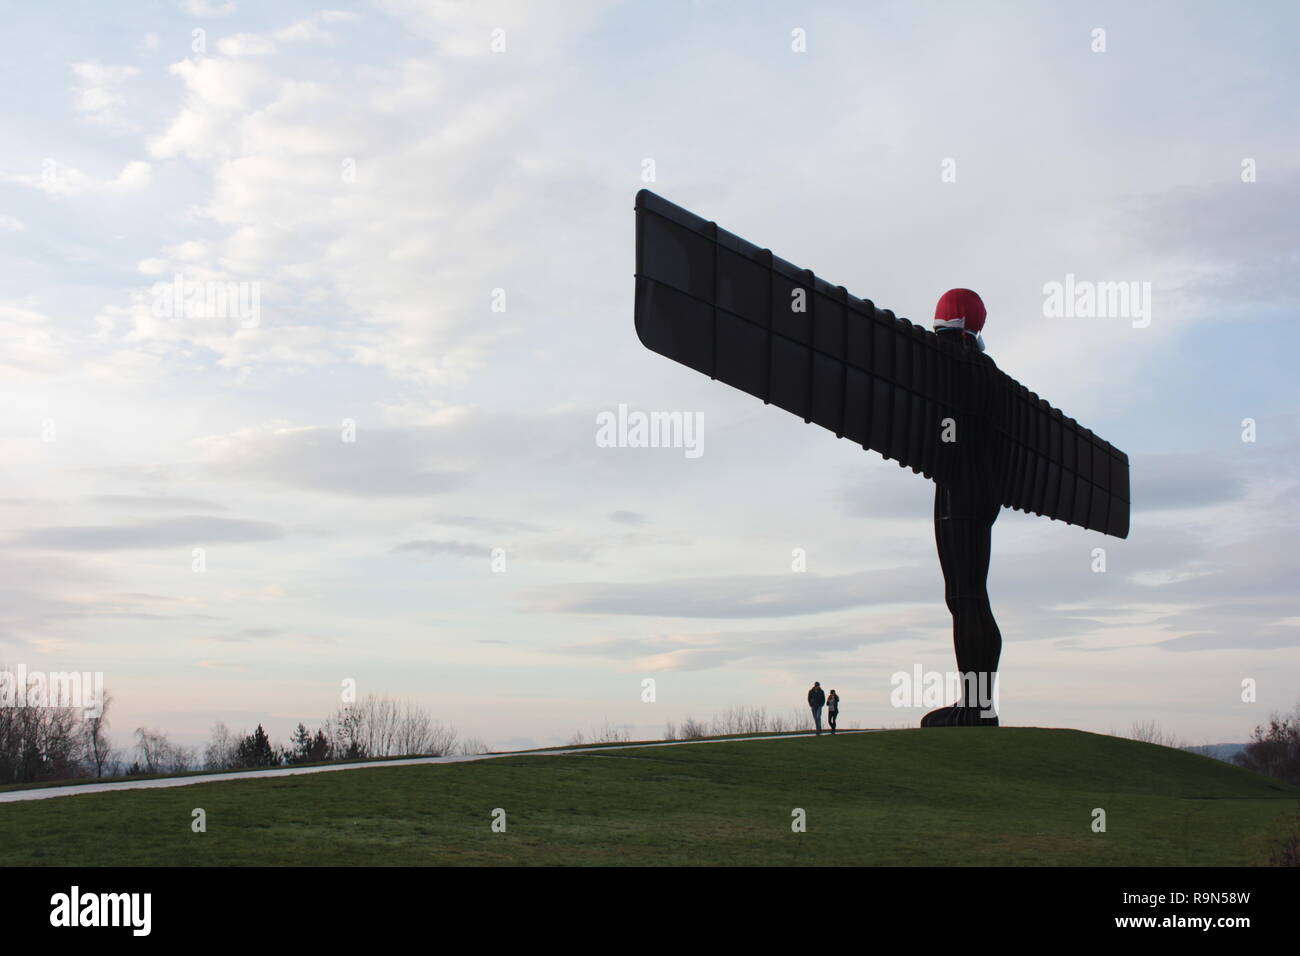 Engel des Nordens mit Santa Clause Hut & Der Mond - Gateshead - Engel des Nordens. Newcastle upon Tyne, Großbritannien, 26. Dezember 2018. DavidWhinham/AlamyLi Stockfoto